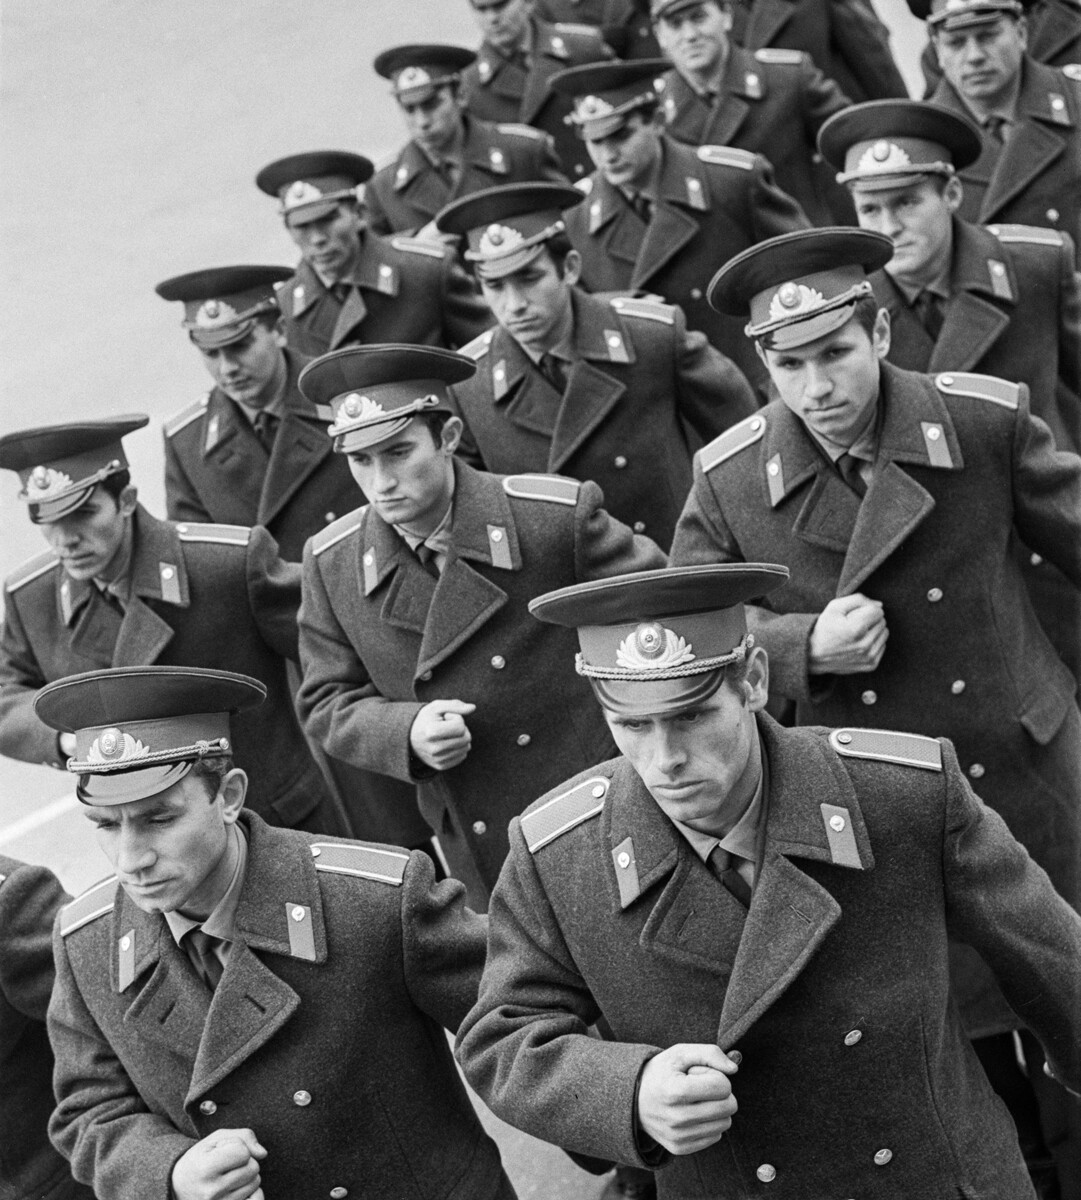  Саратовско особено приблизително учебно заведение на милицията на Министерството на вътрешните работи на Съюз на съветските социалистически републики, 27 октомври 1971 година Кадети на учебното заведение по време на марш 